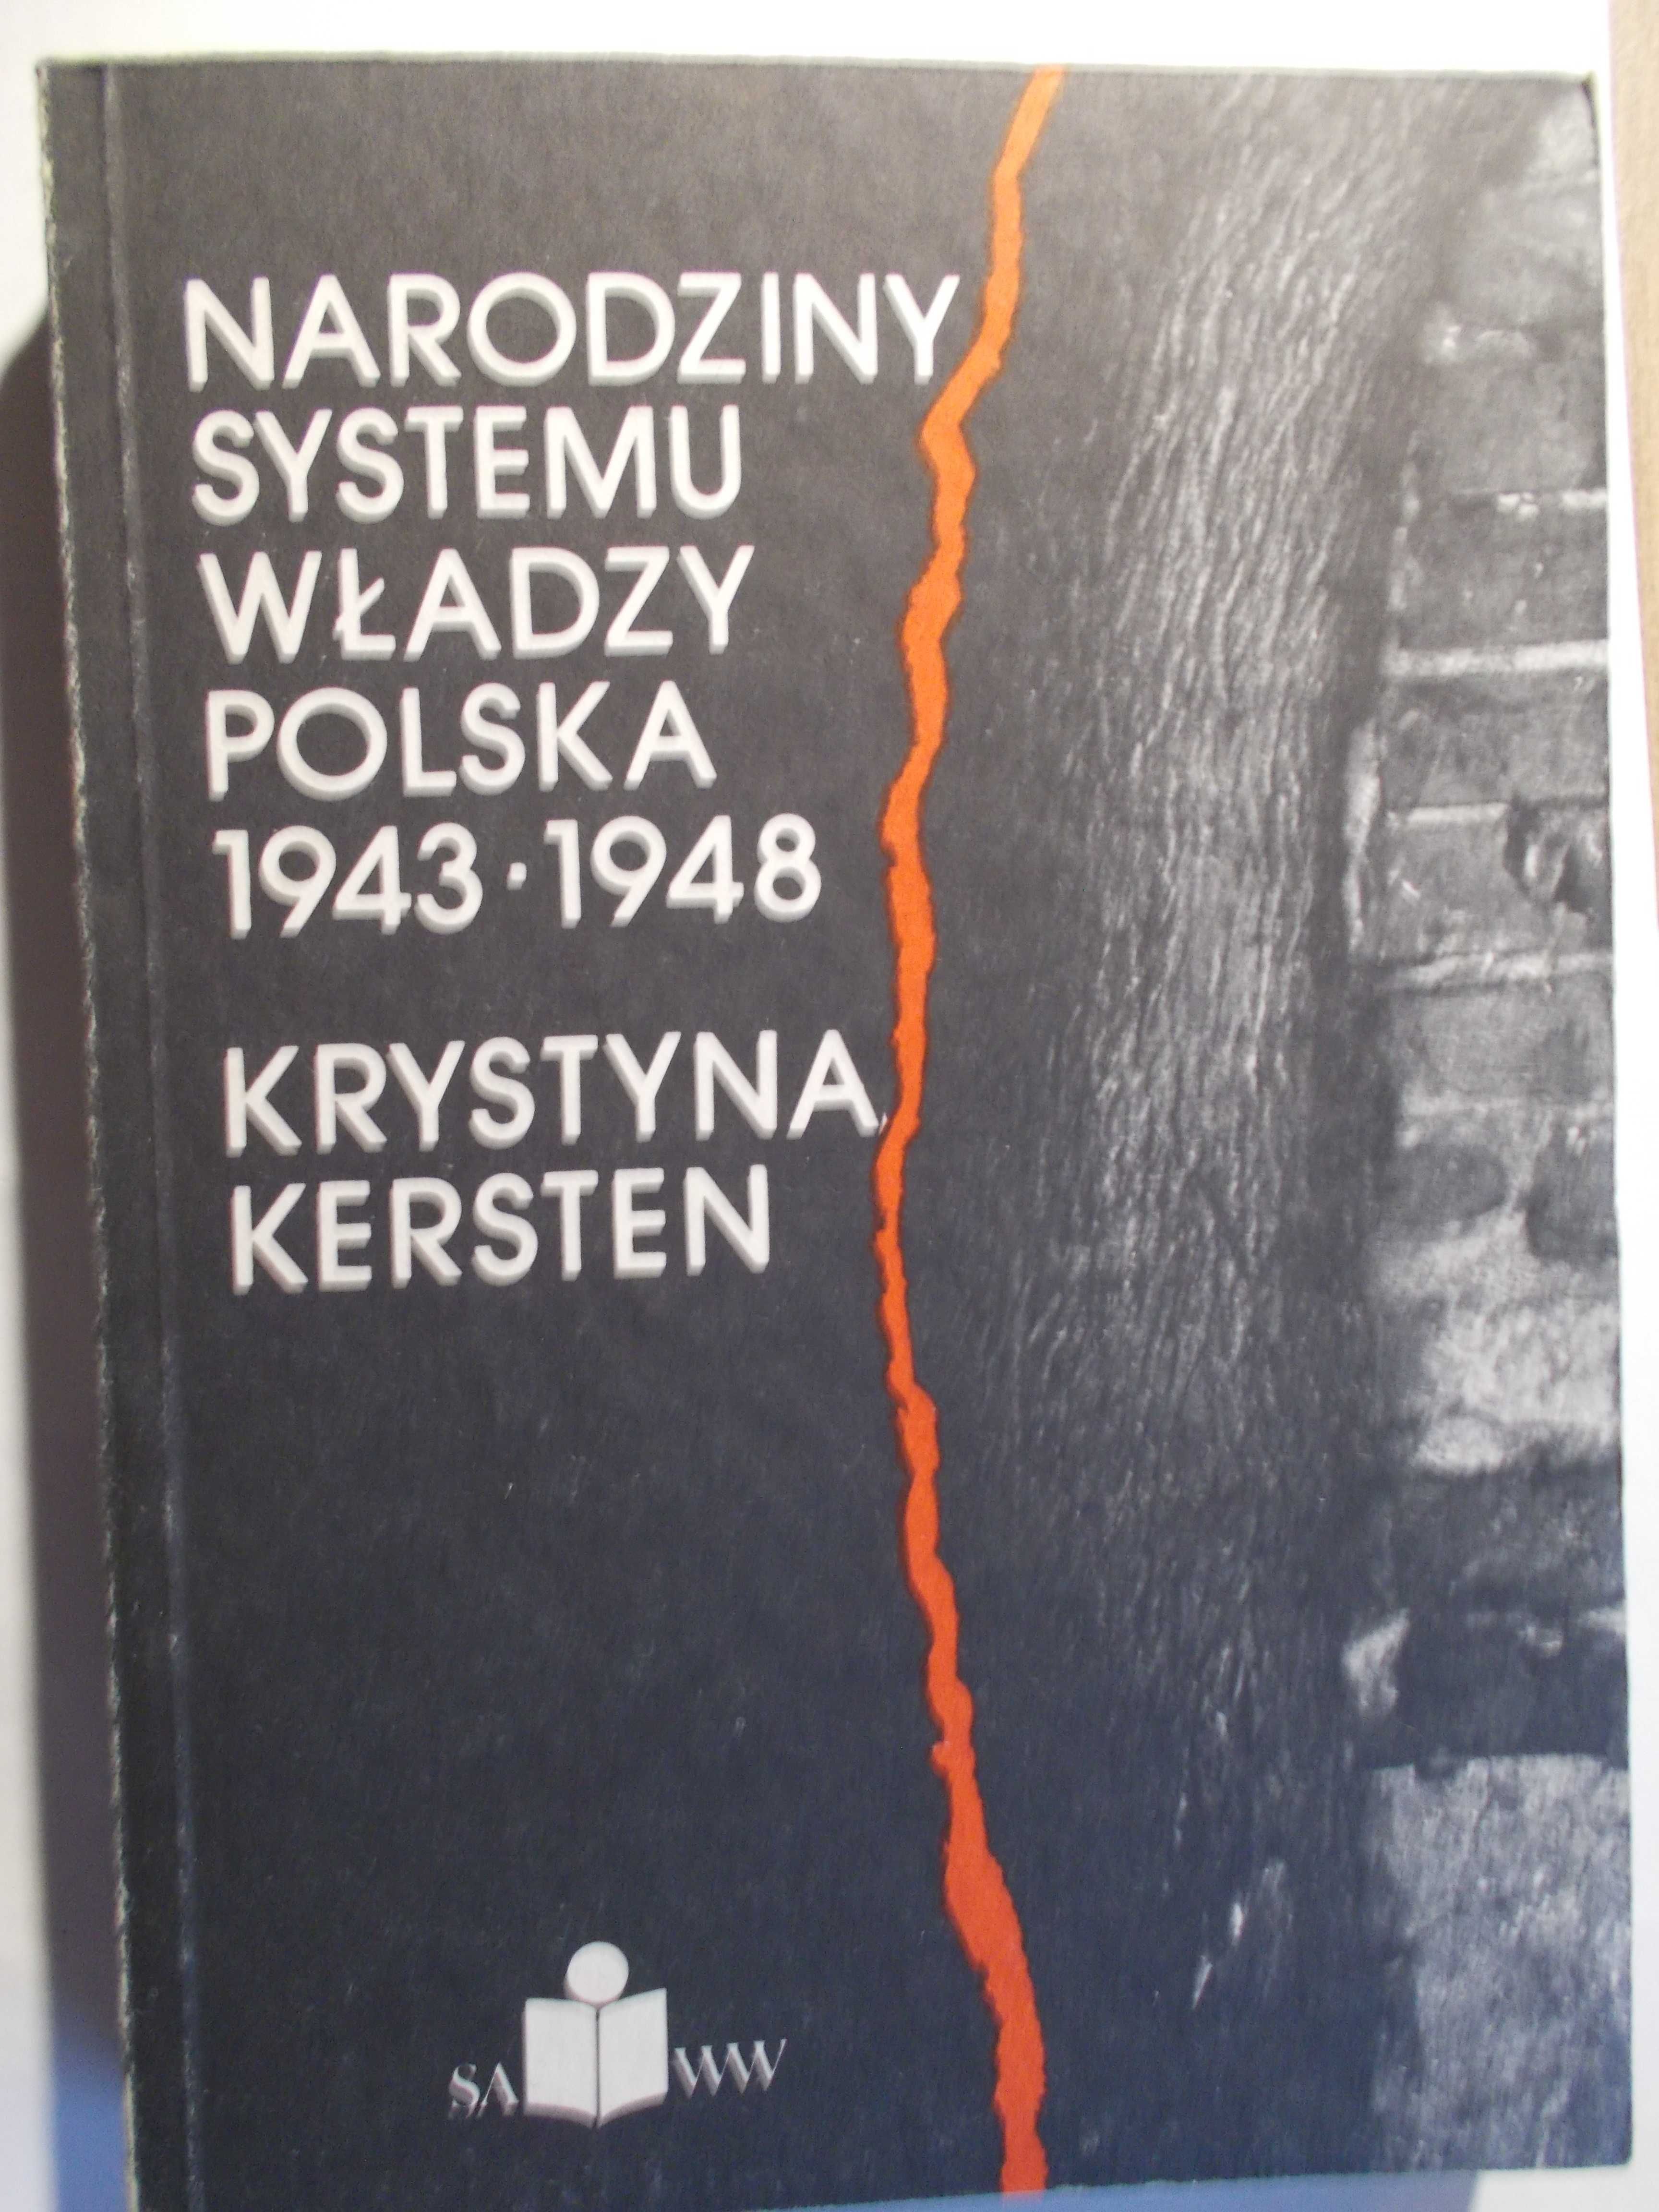 Komplet 6 książek z historii współczesnej powojennej Polski